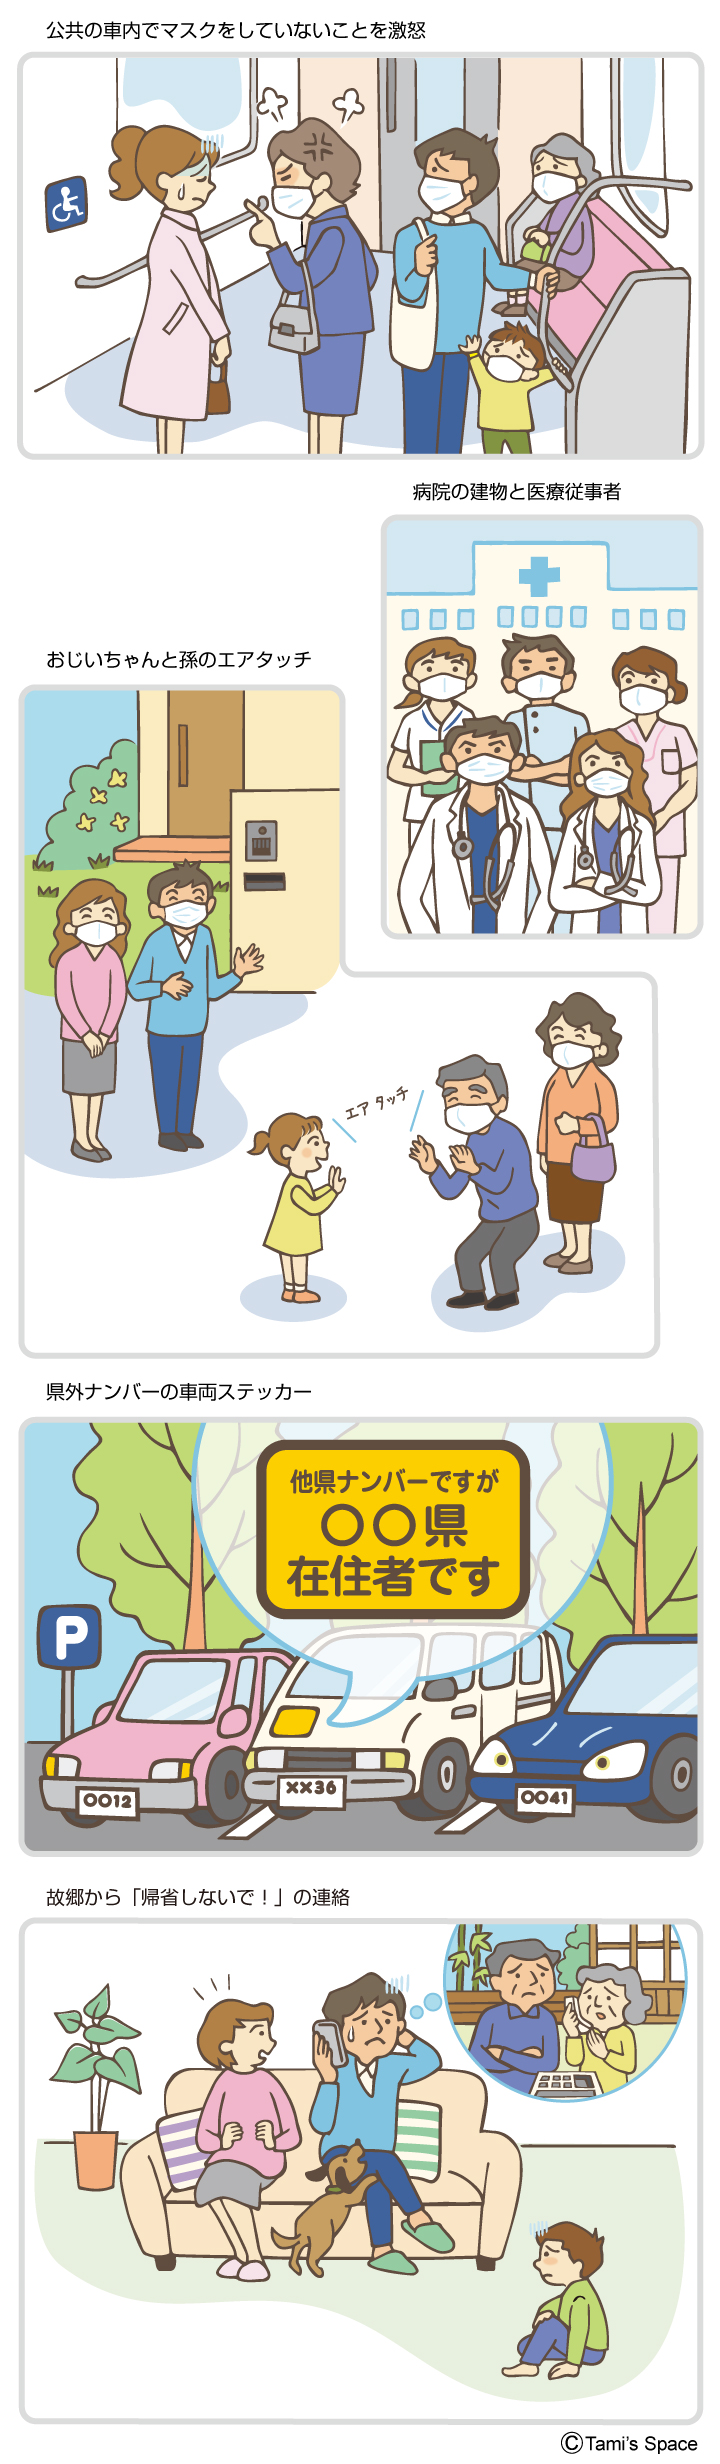 akaruikokoro_illustration.jpg